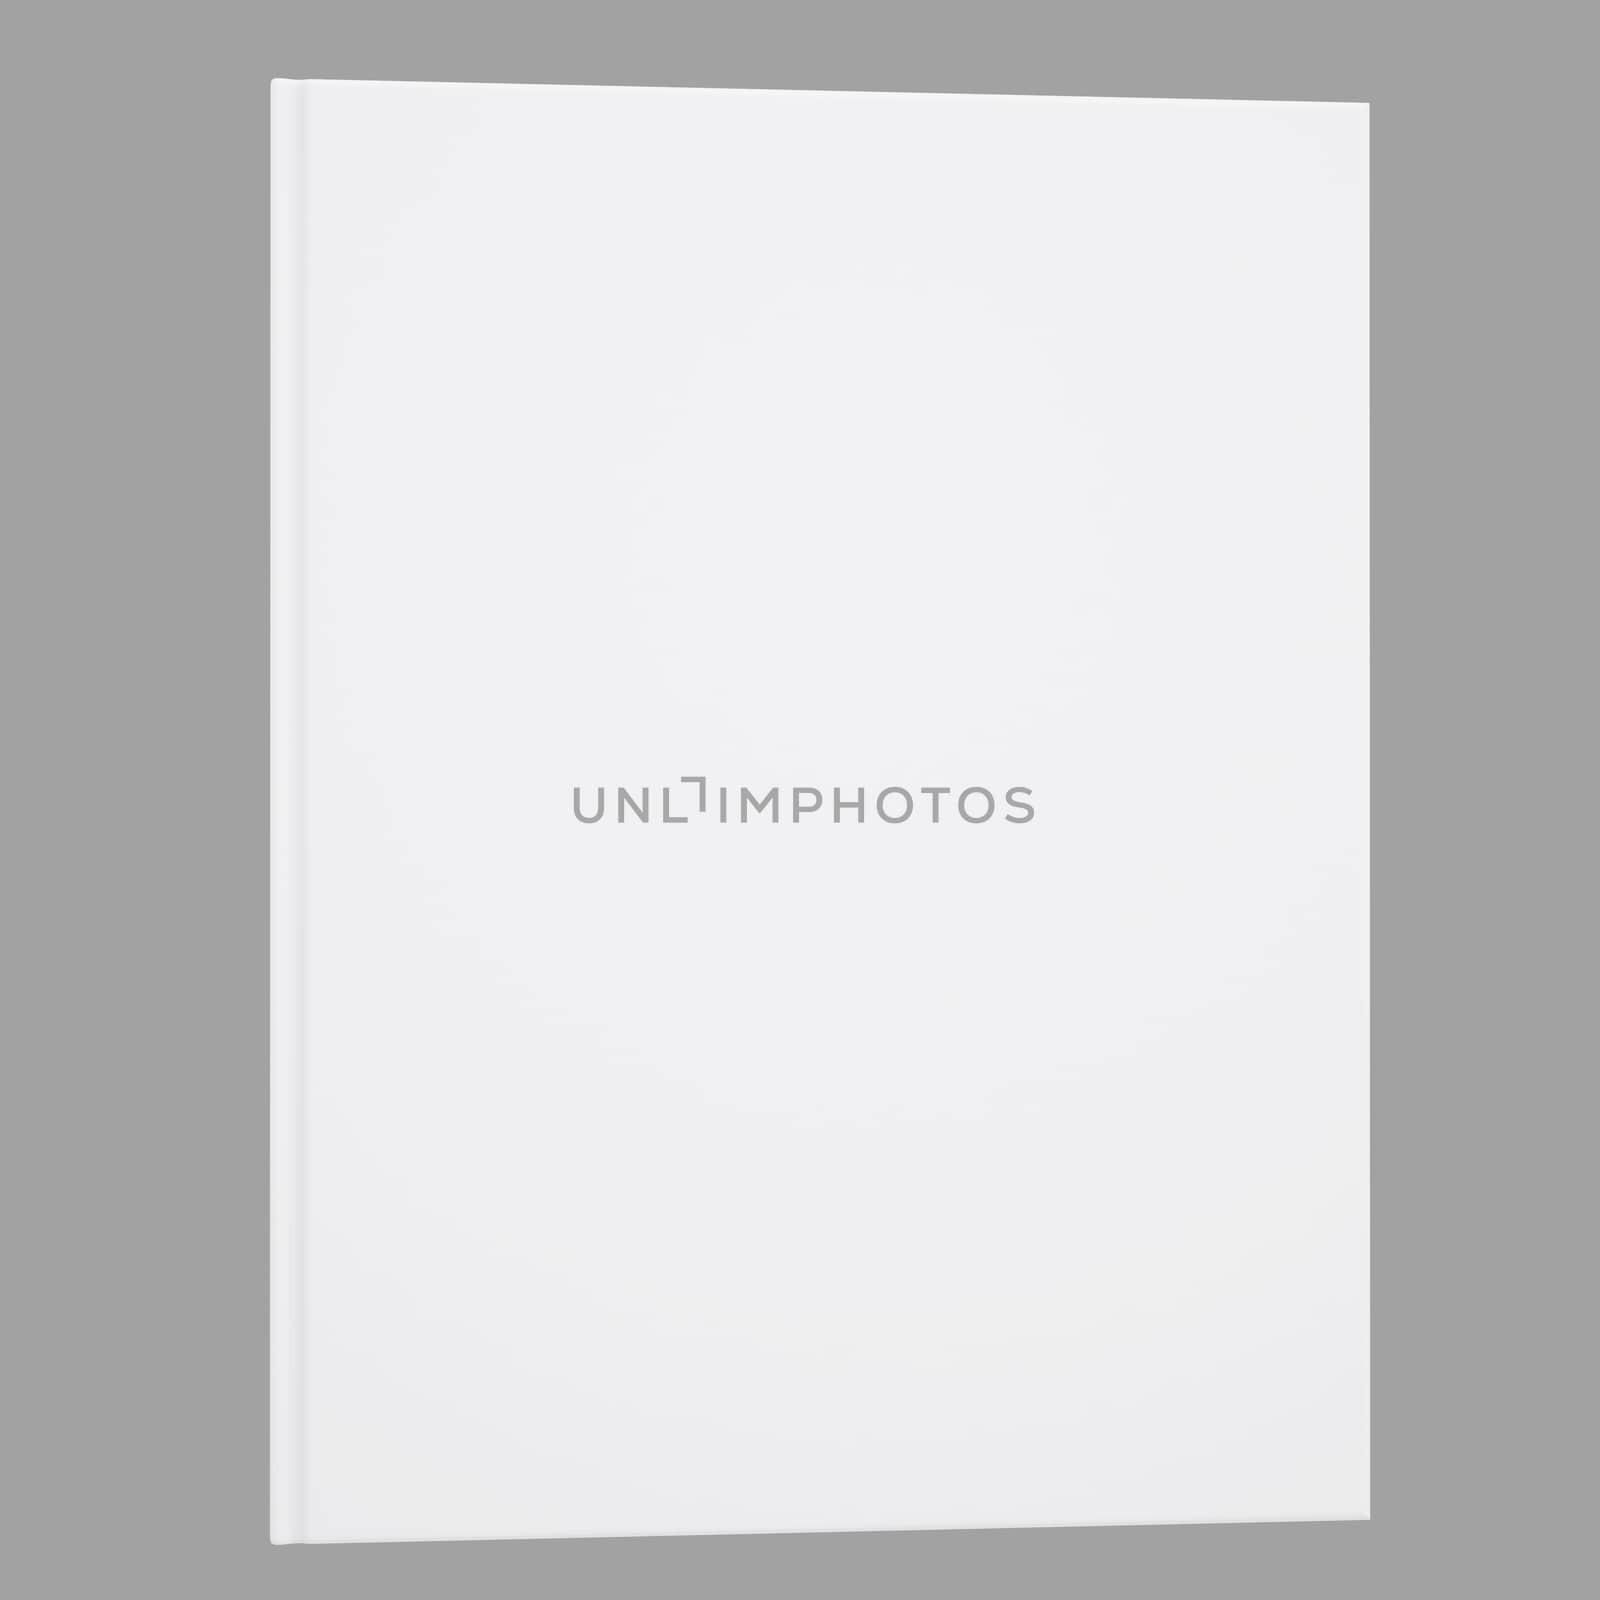 A white book by cherezoff